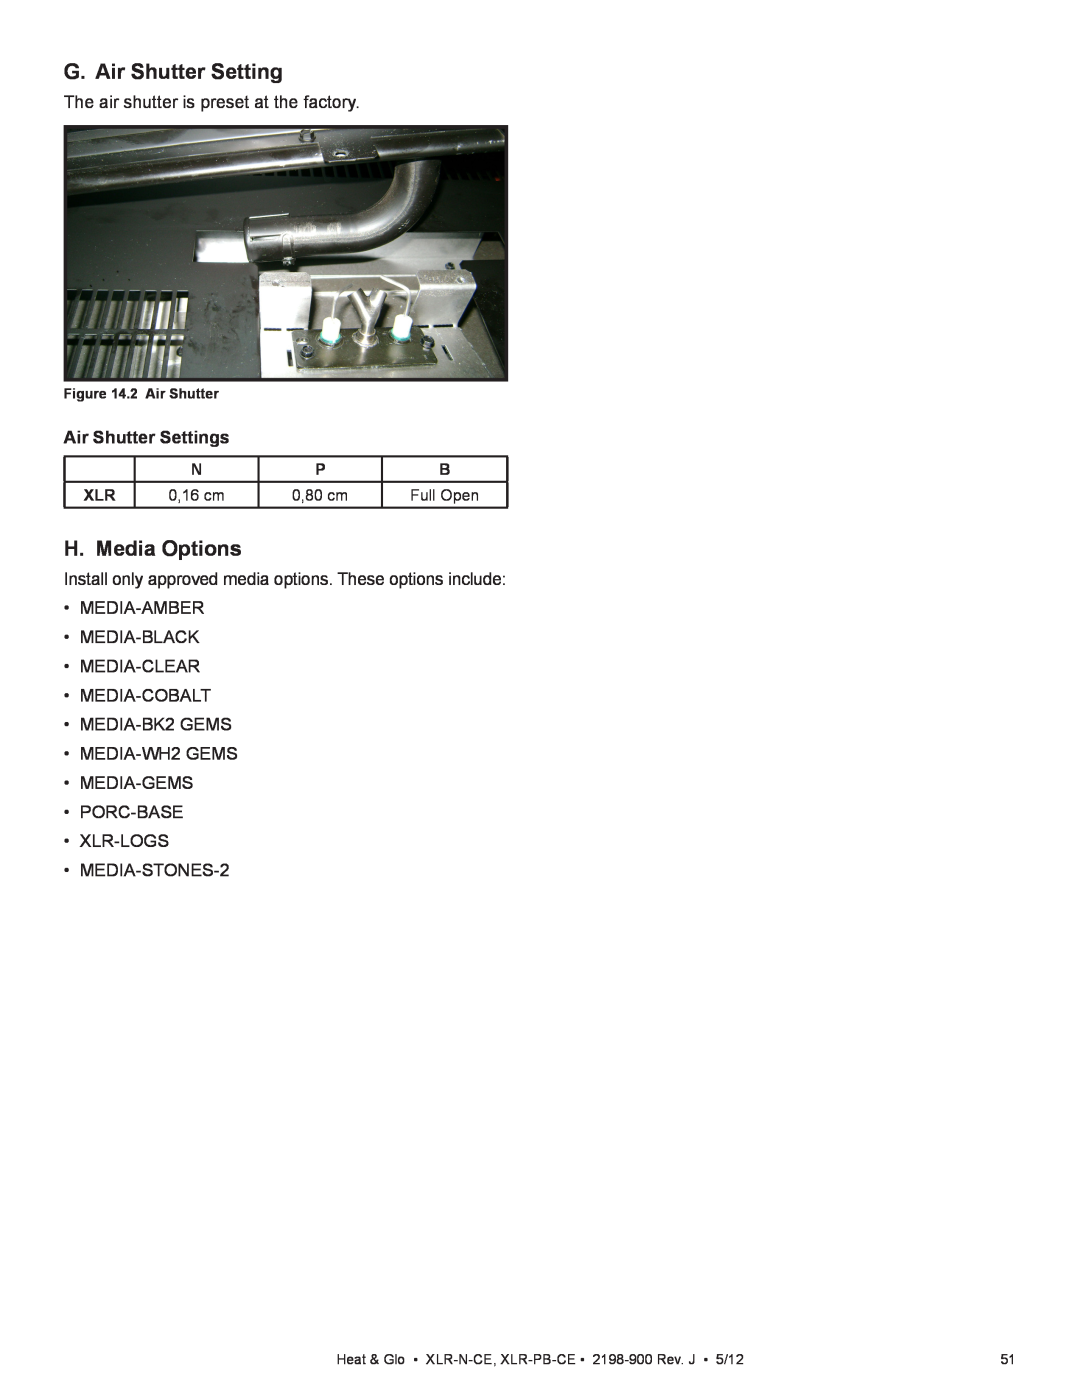 Heat & Glo LifeStyle XLR-PB-CE G. Air Shutter Setting, H. Media Options, Air Shutter Settings, 2 Air Shutter, 0,16 cm 